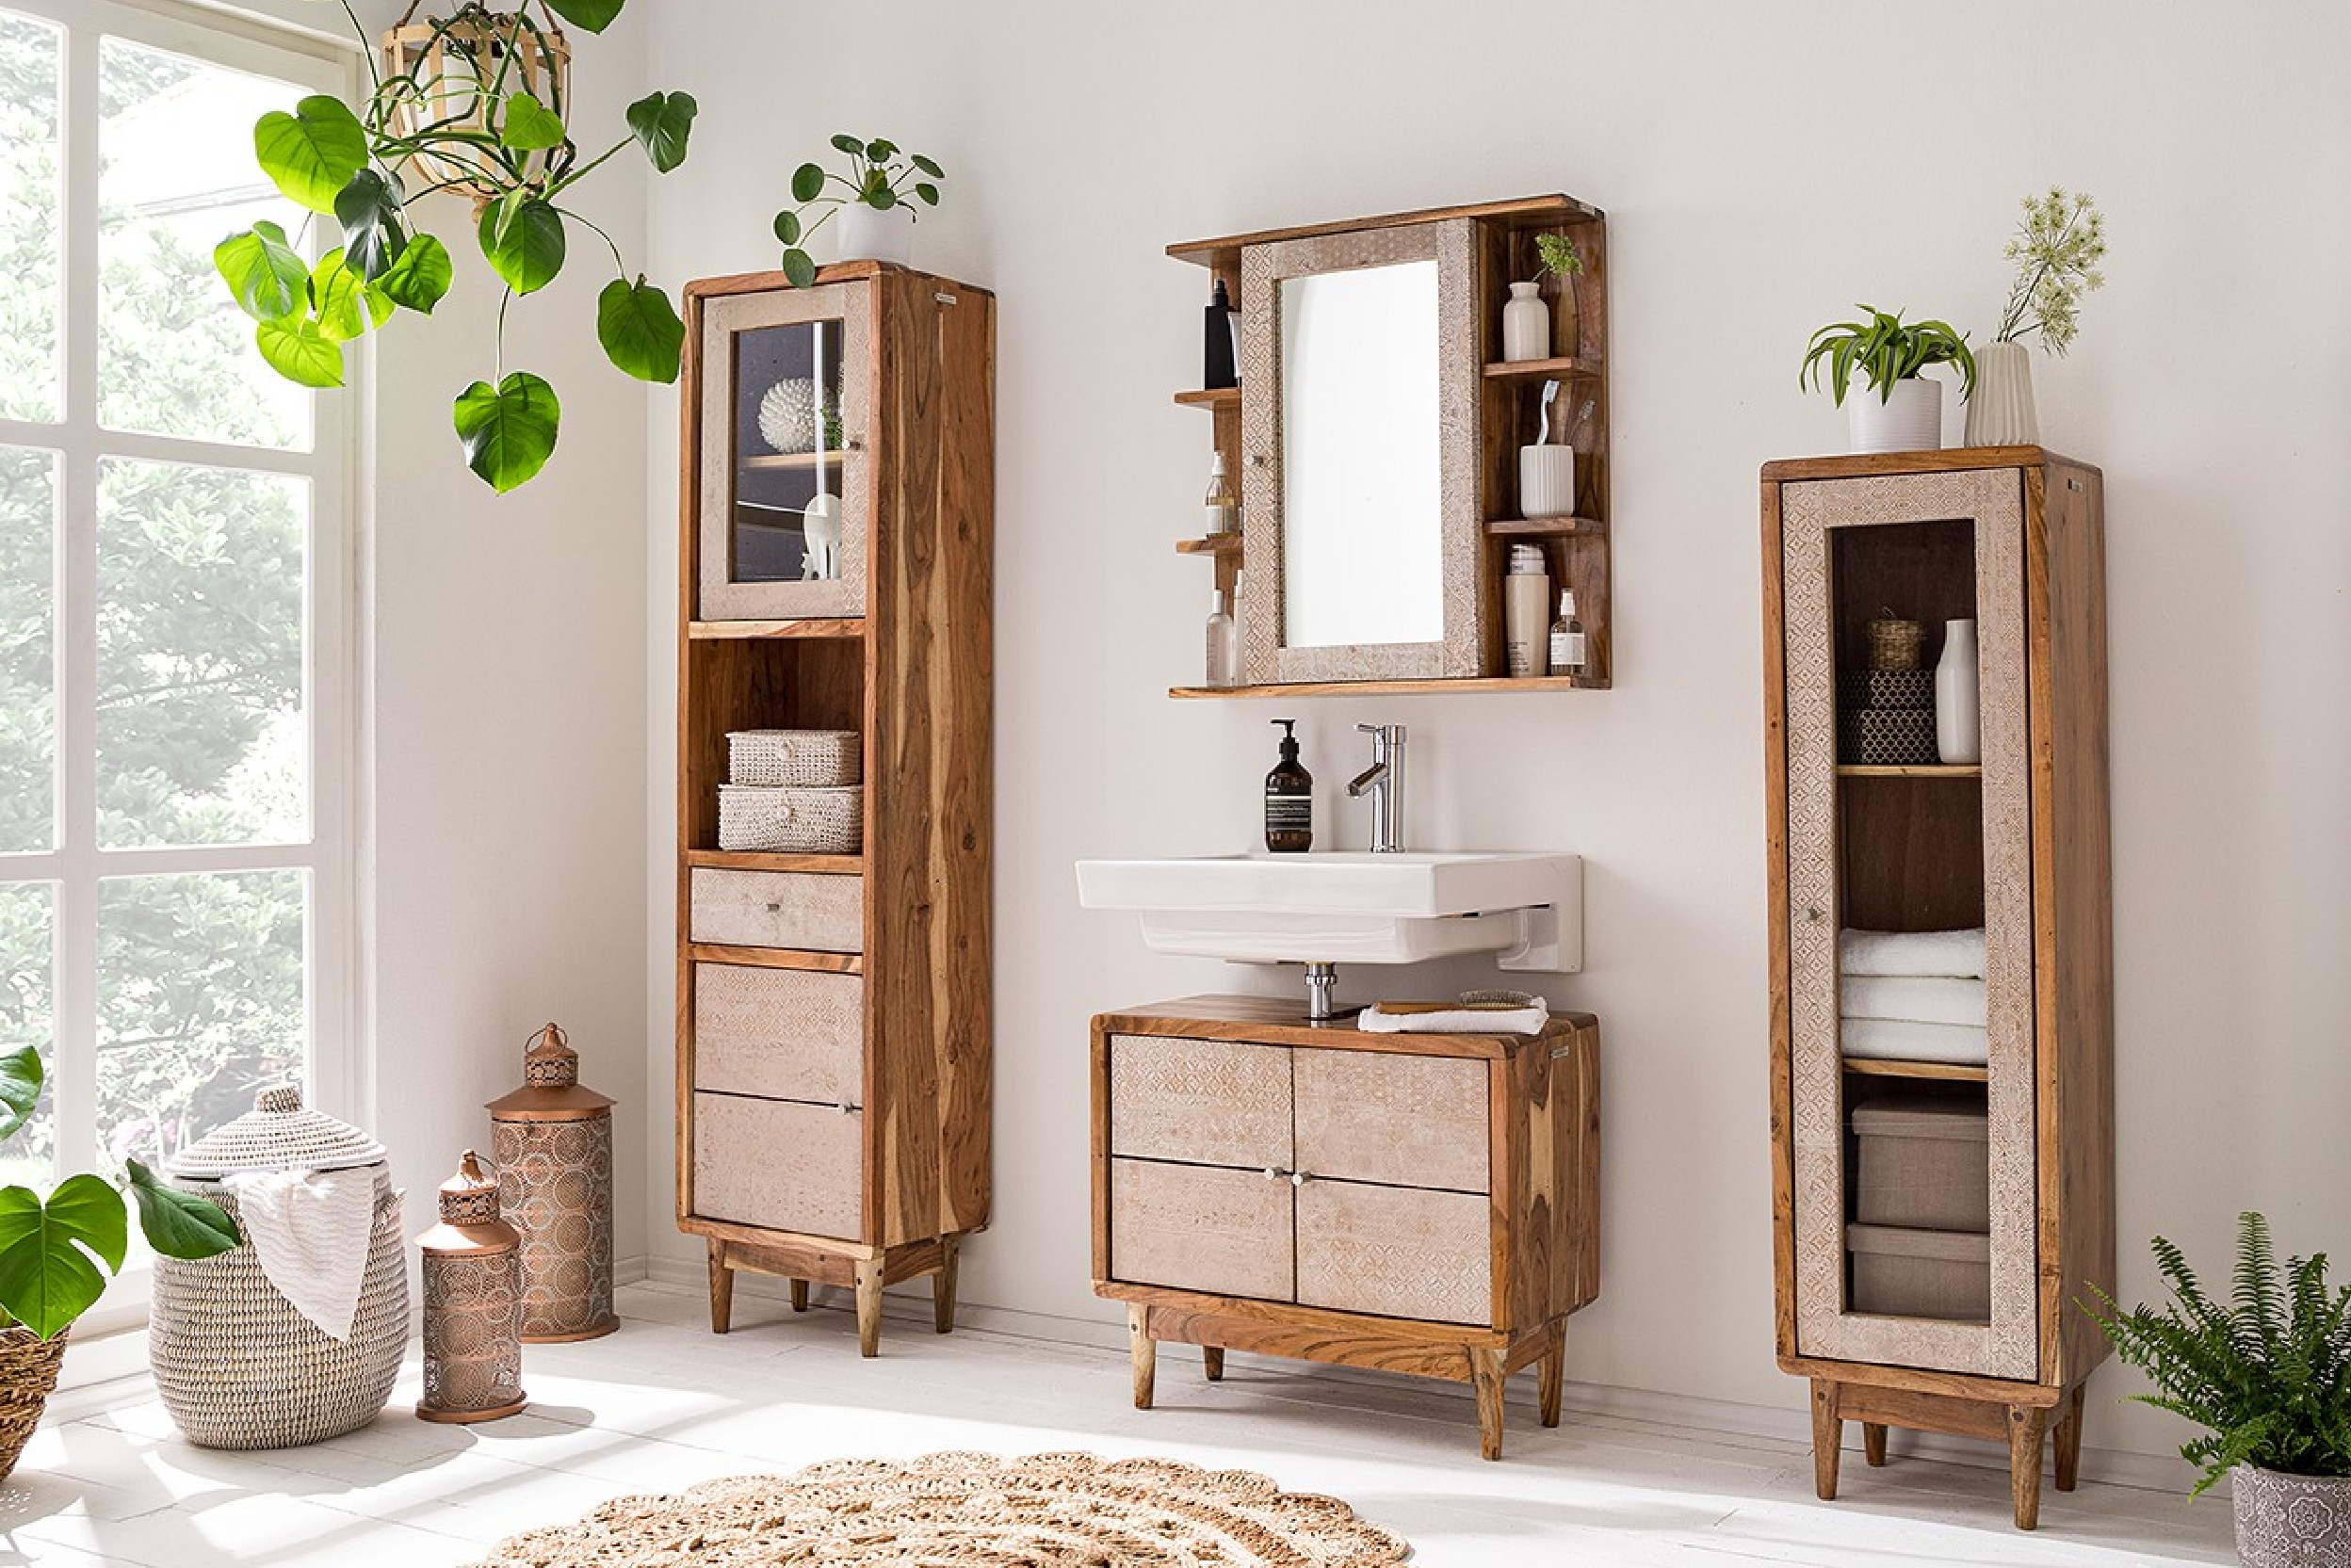 Badezimmer mit Rustik-Holzmöbel und mehrere Pflanzen